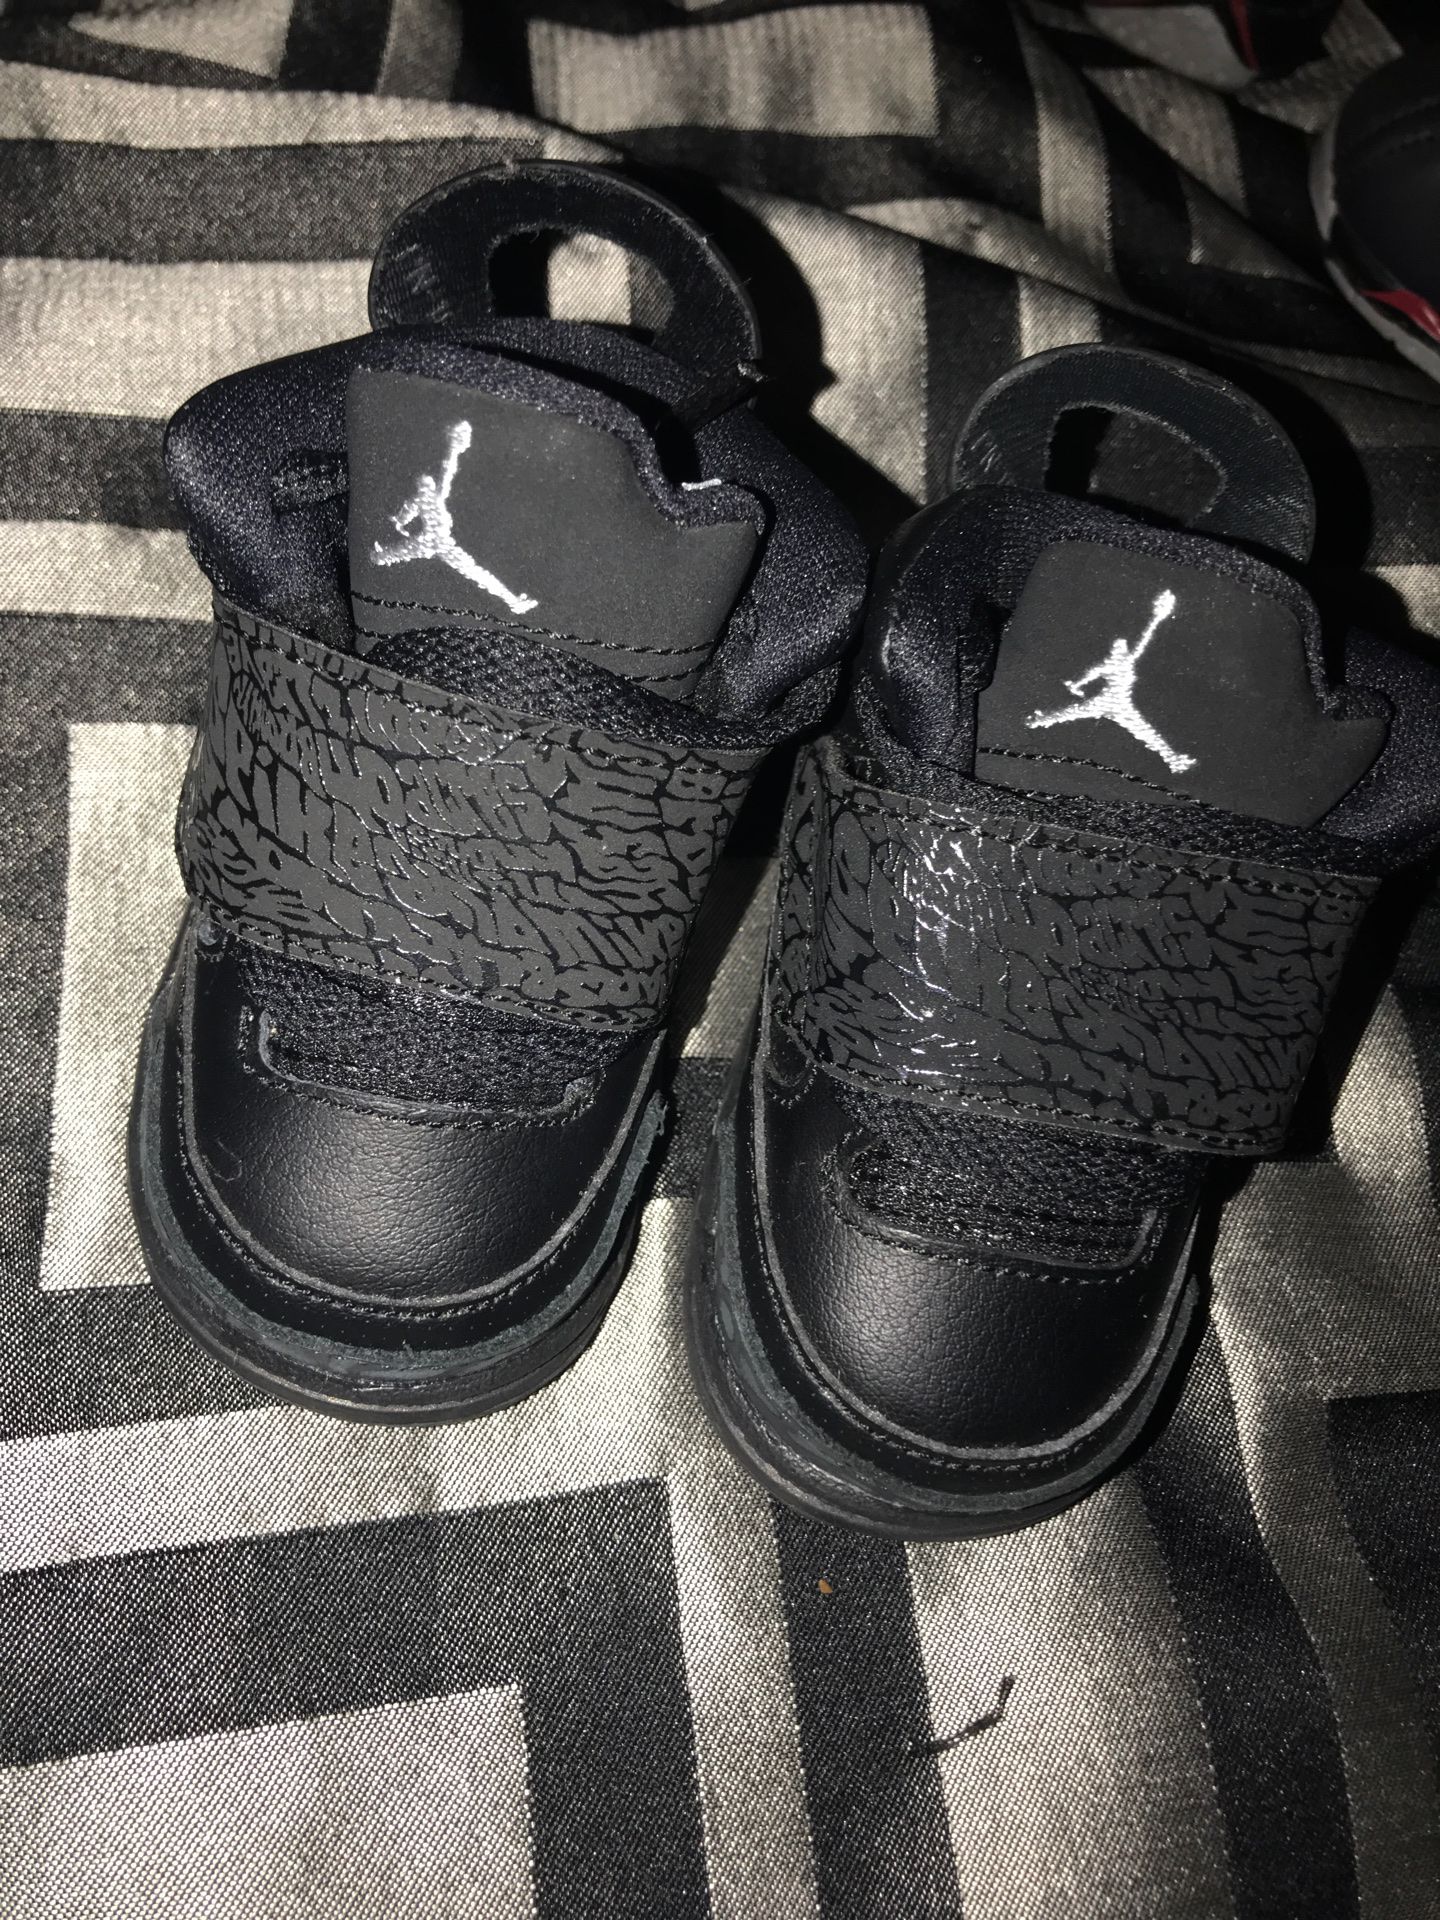 Size 1c infant Jordan’s